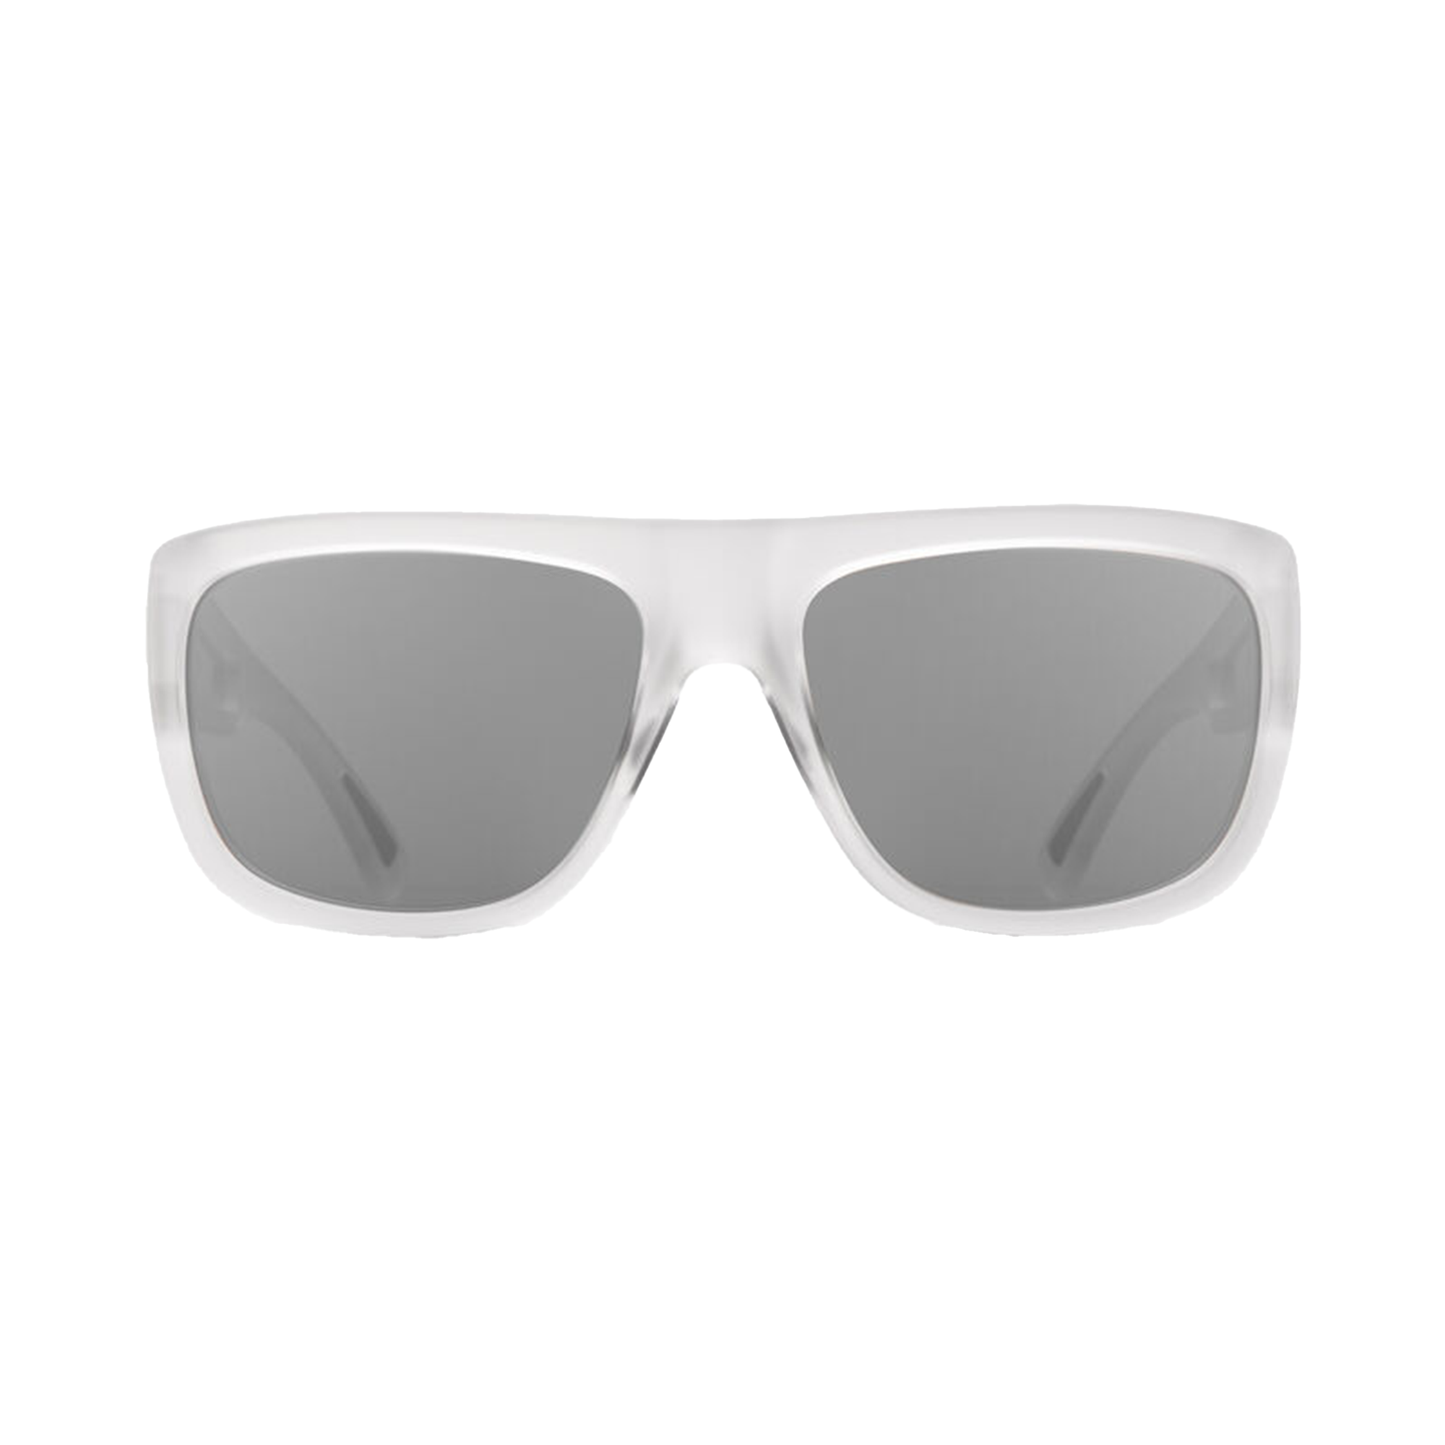 Giro Wilson Sunglasses Matte Clear VIVID Onyx - Giro Bike Sunglasses